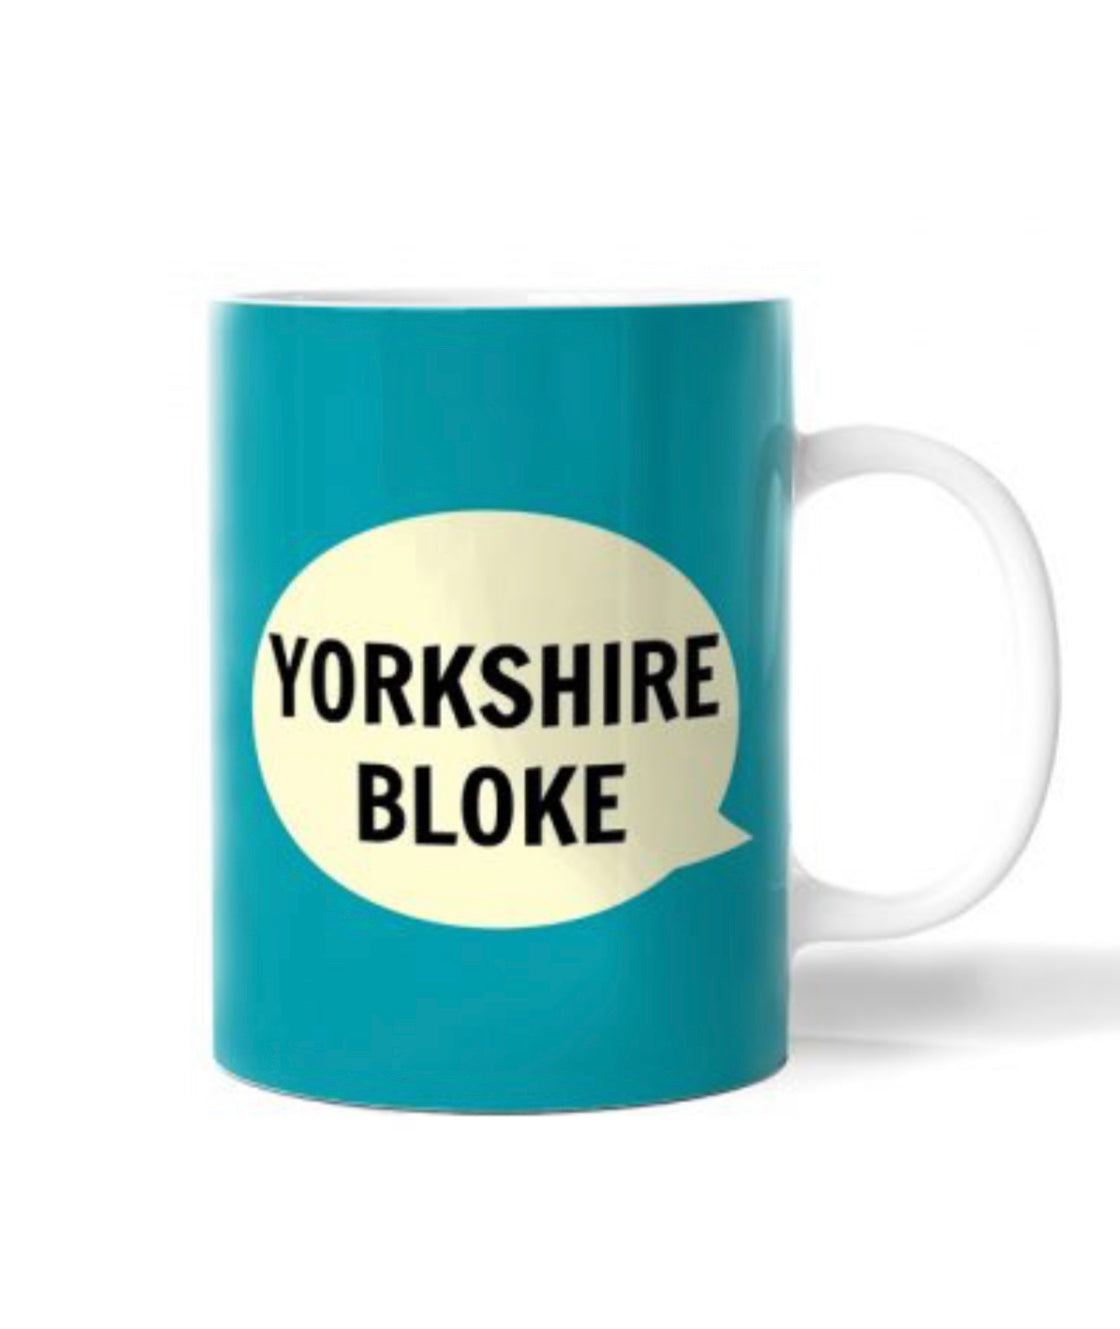 Yorkshire Mug - Yorkshire Bloke